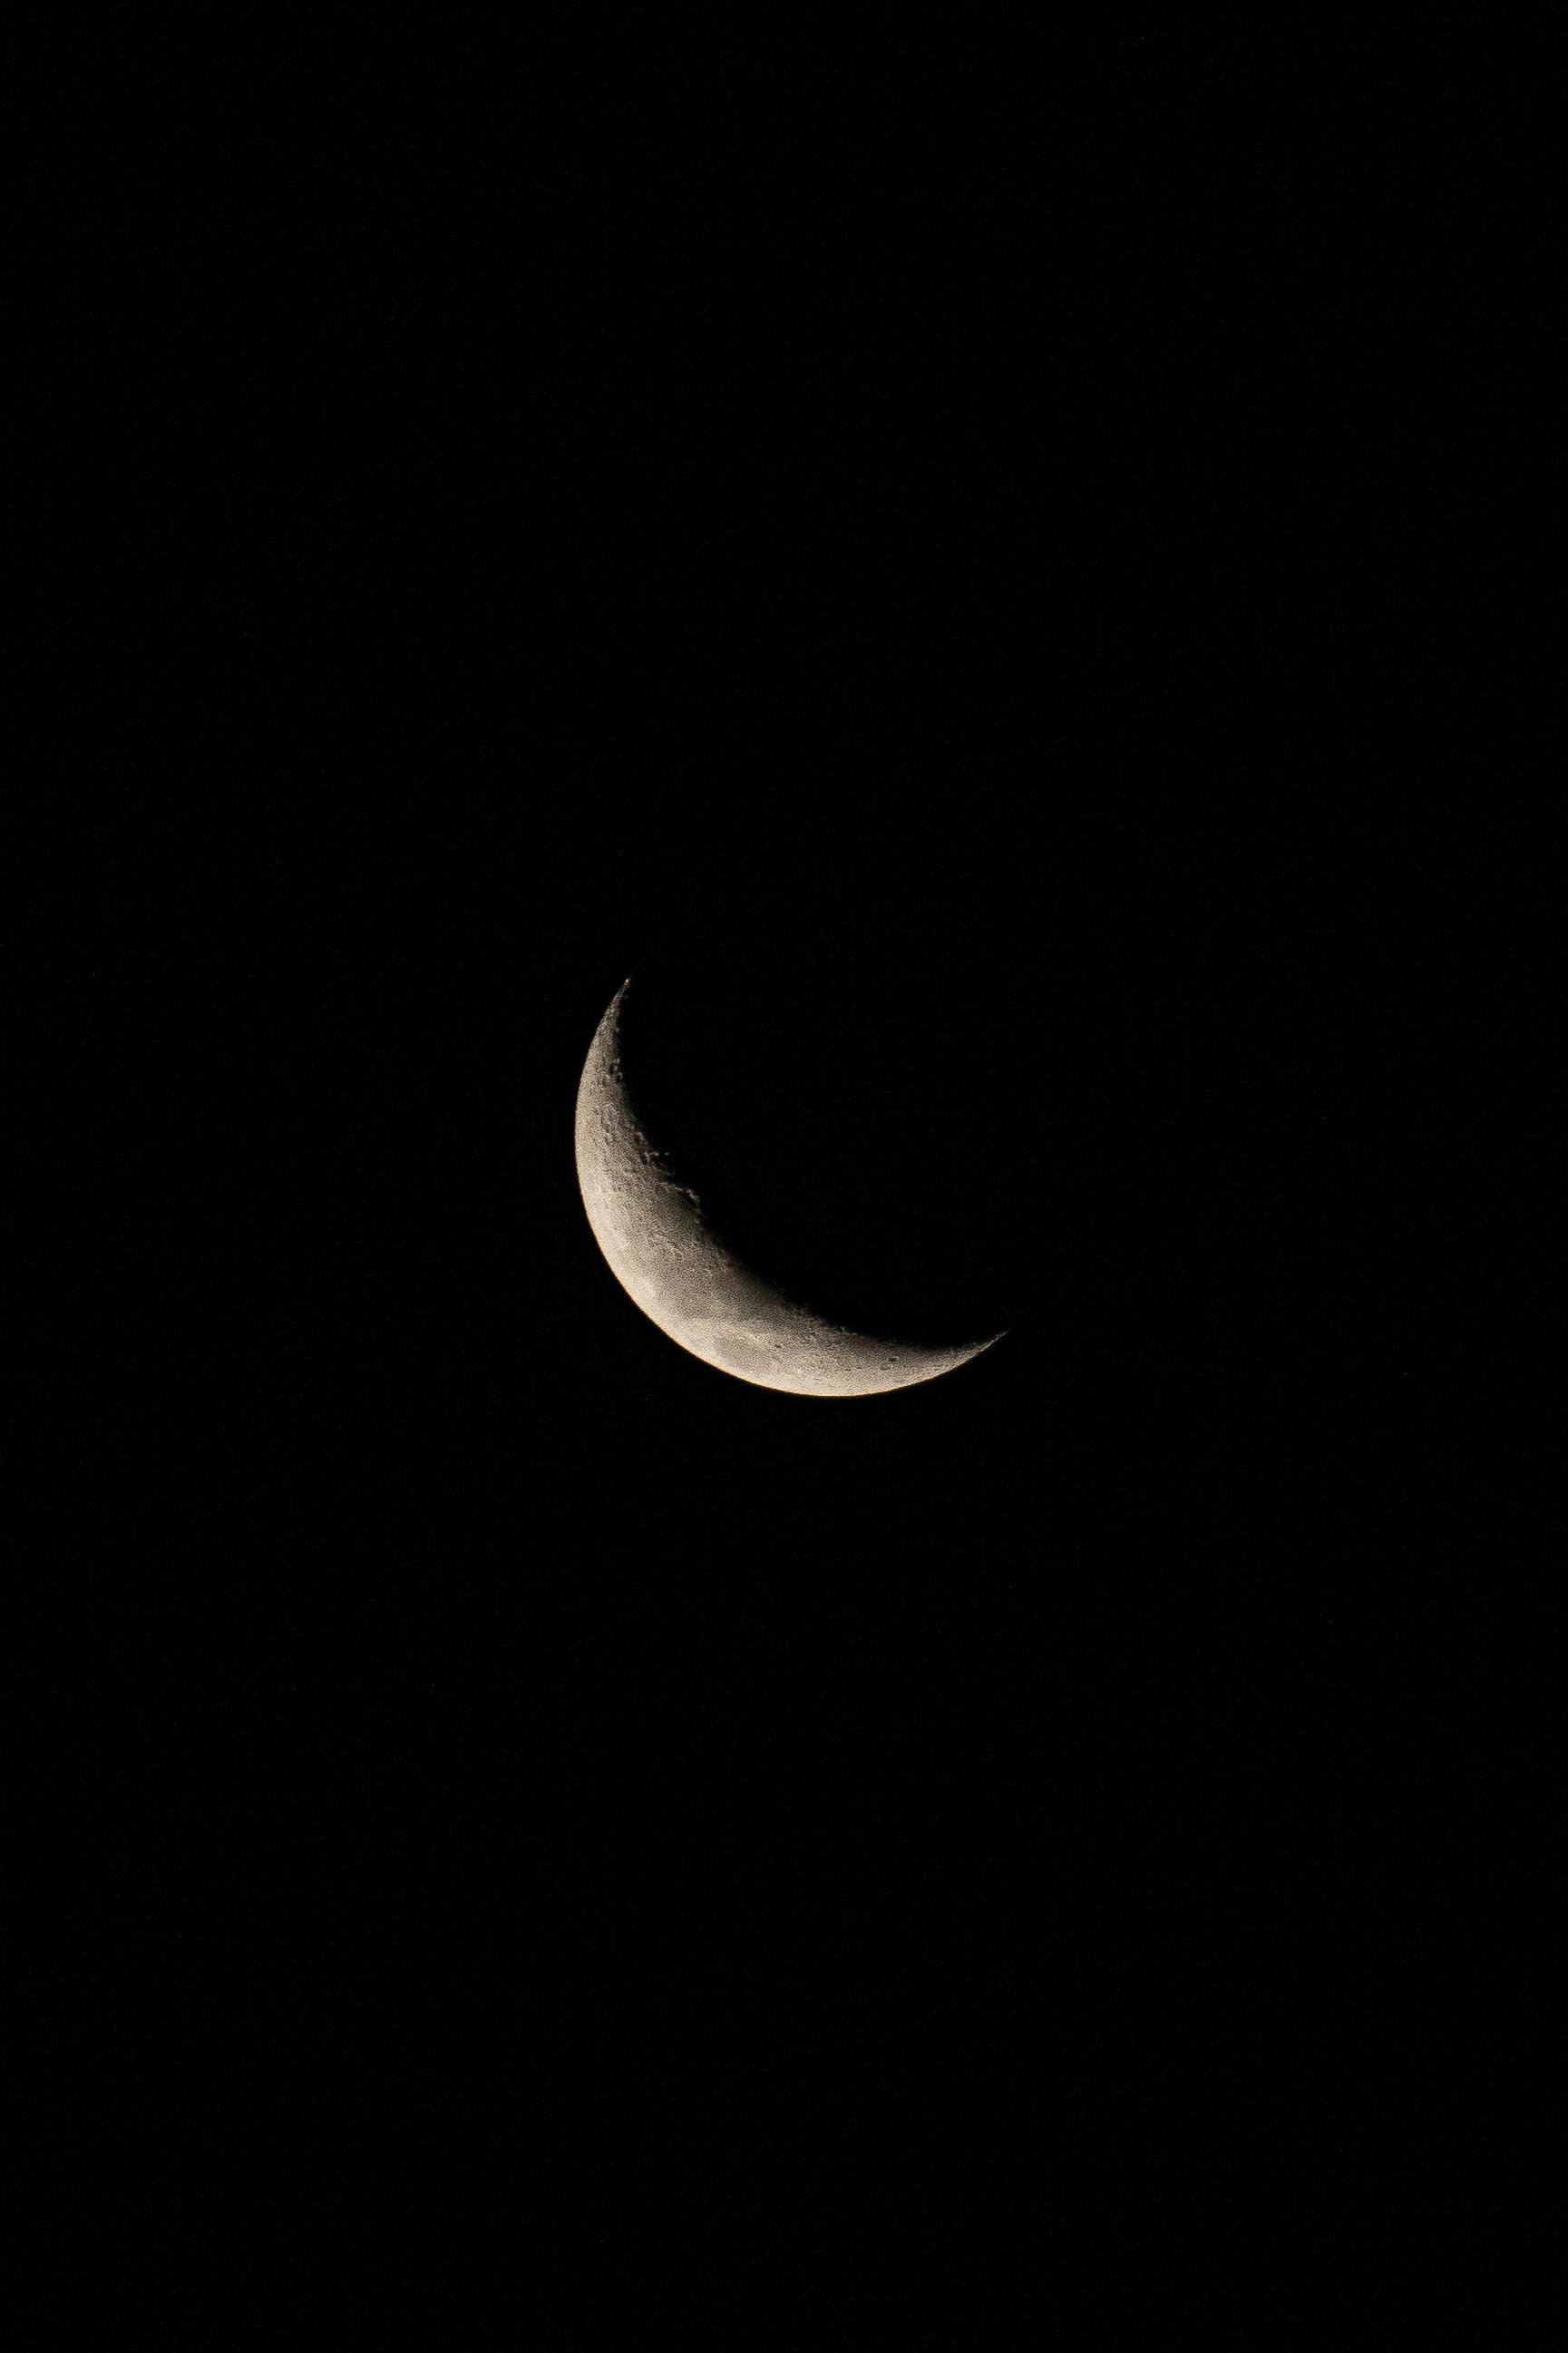 Nếu bạn muốn tìm kiếm các hình ảnh trăng mẫu hình với vòng lưỡi cưa mong manh và đẹp mắt, hãy xem các hình ảnh trăng lưỡi cưa mới nhất. Hình ảnh này sẽ cho bạn một cái nhìn tuyệt vời về vẻ đẹp của con trăng trong tình huống đó.